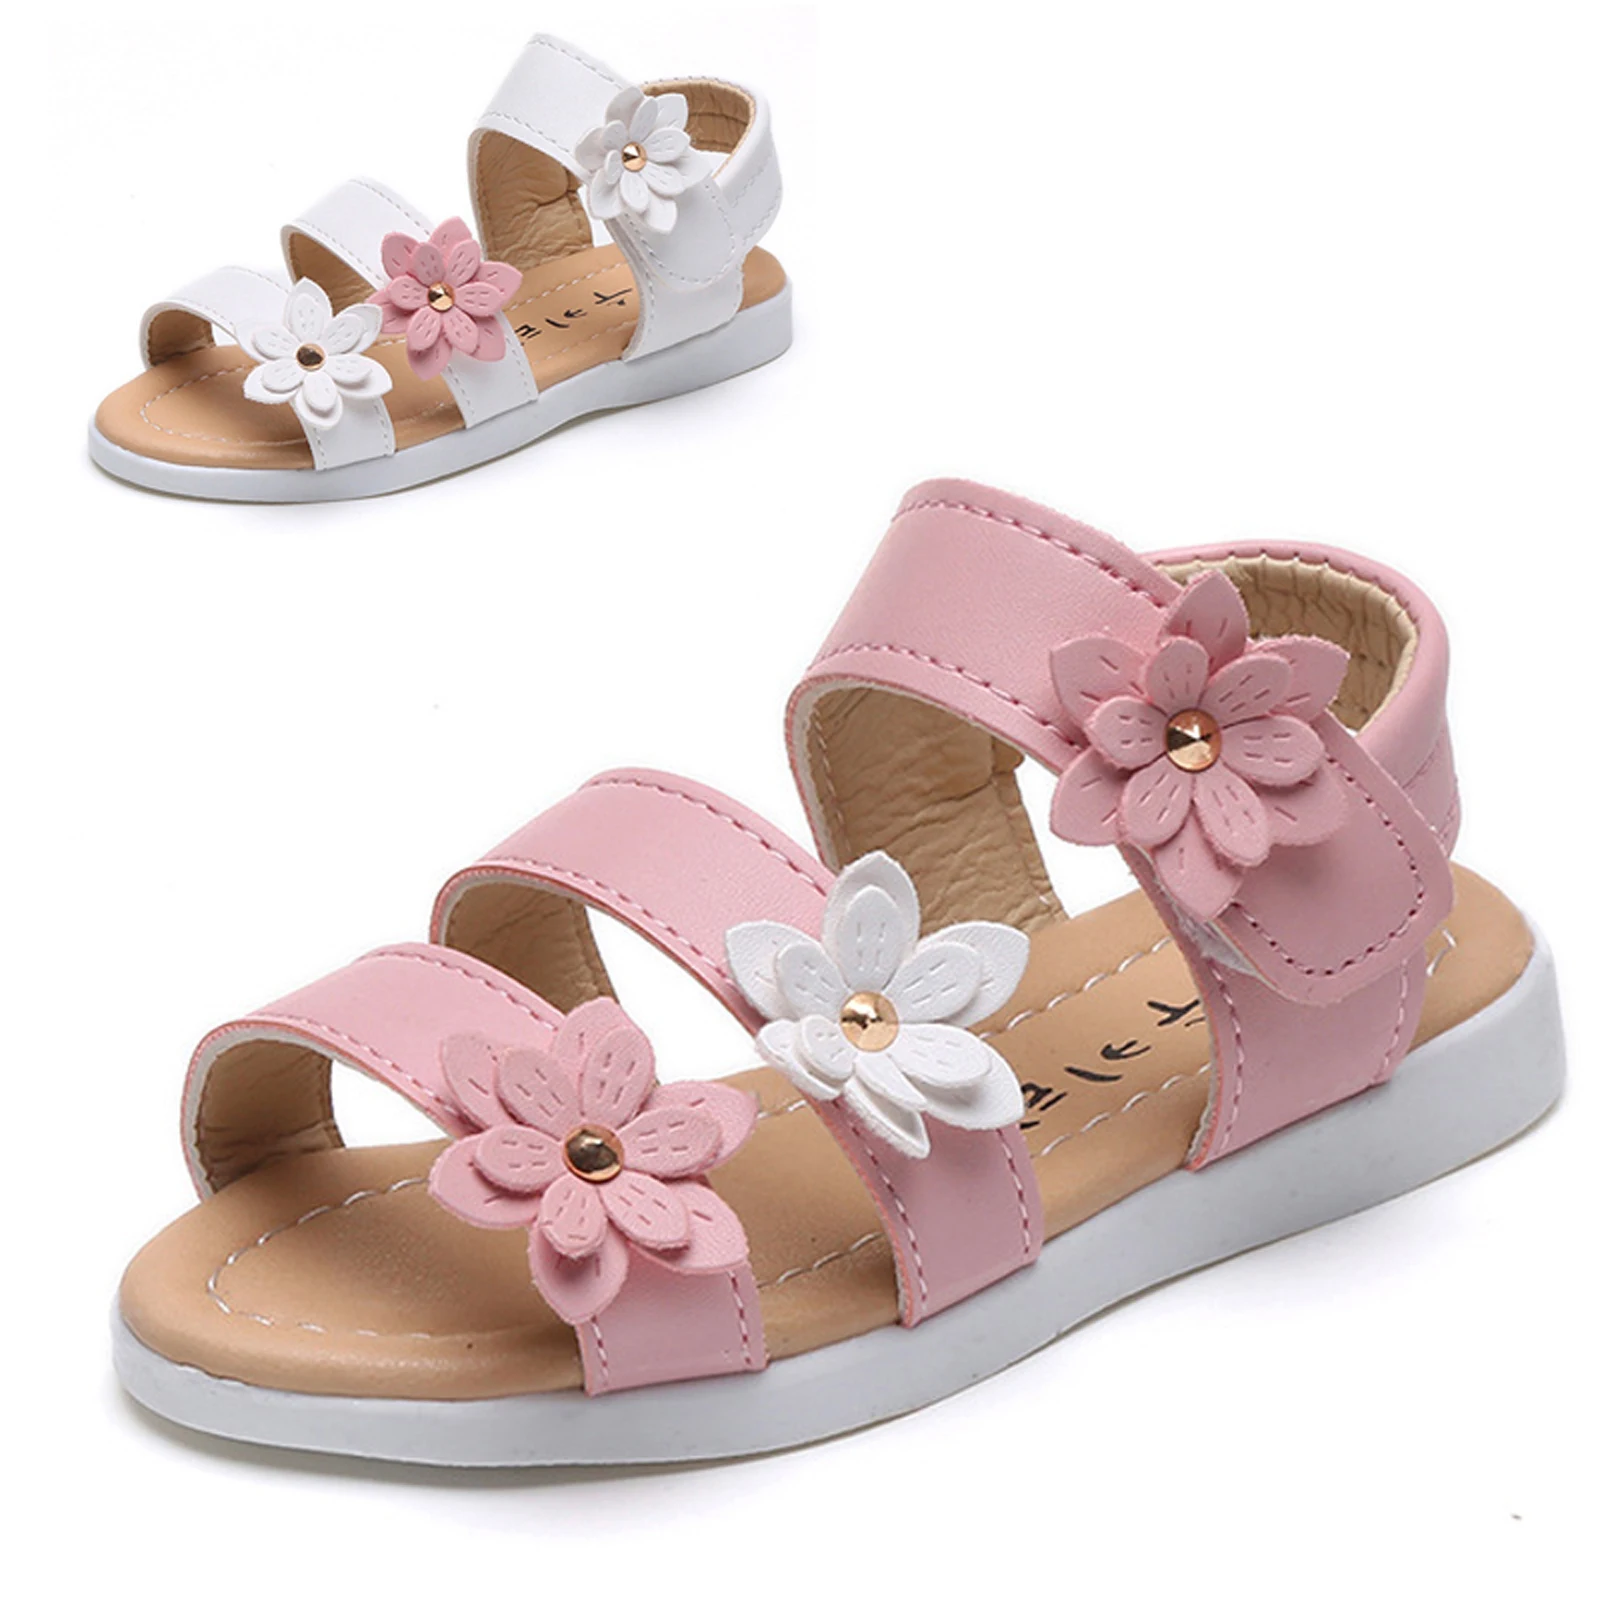 

Summer Children Sandals Girls Princess Beautiful Flower Shoes Kids Flats Sandals Sweet Style Baby Girls Roman Shoes